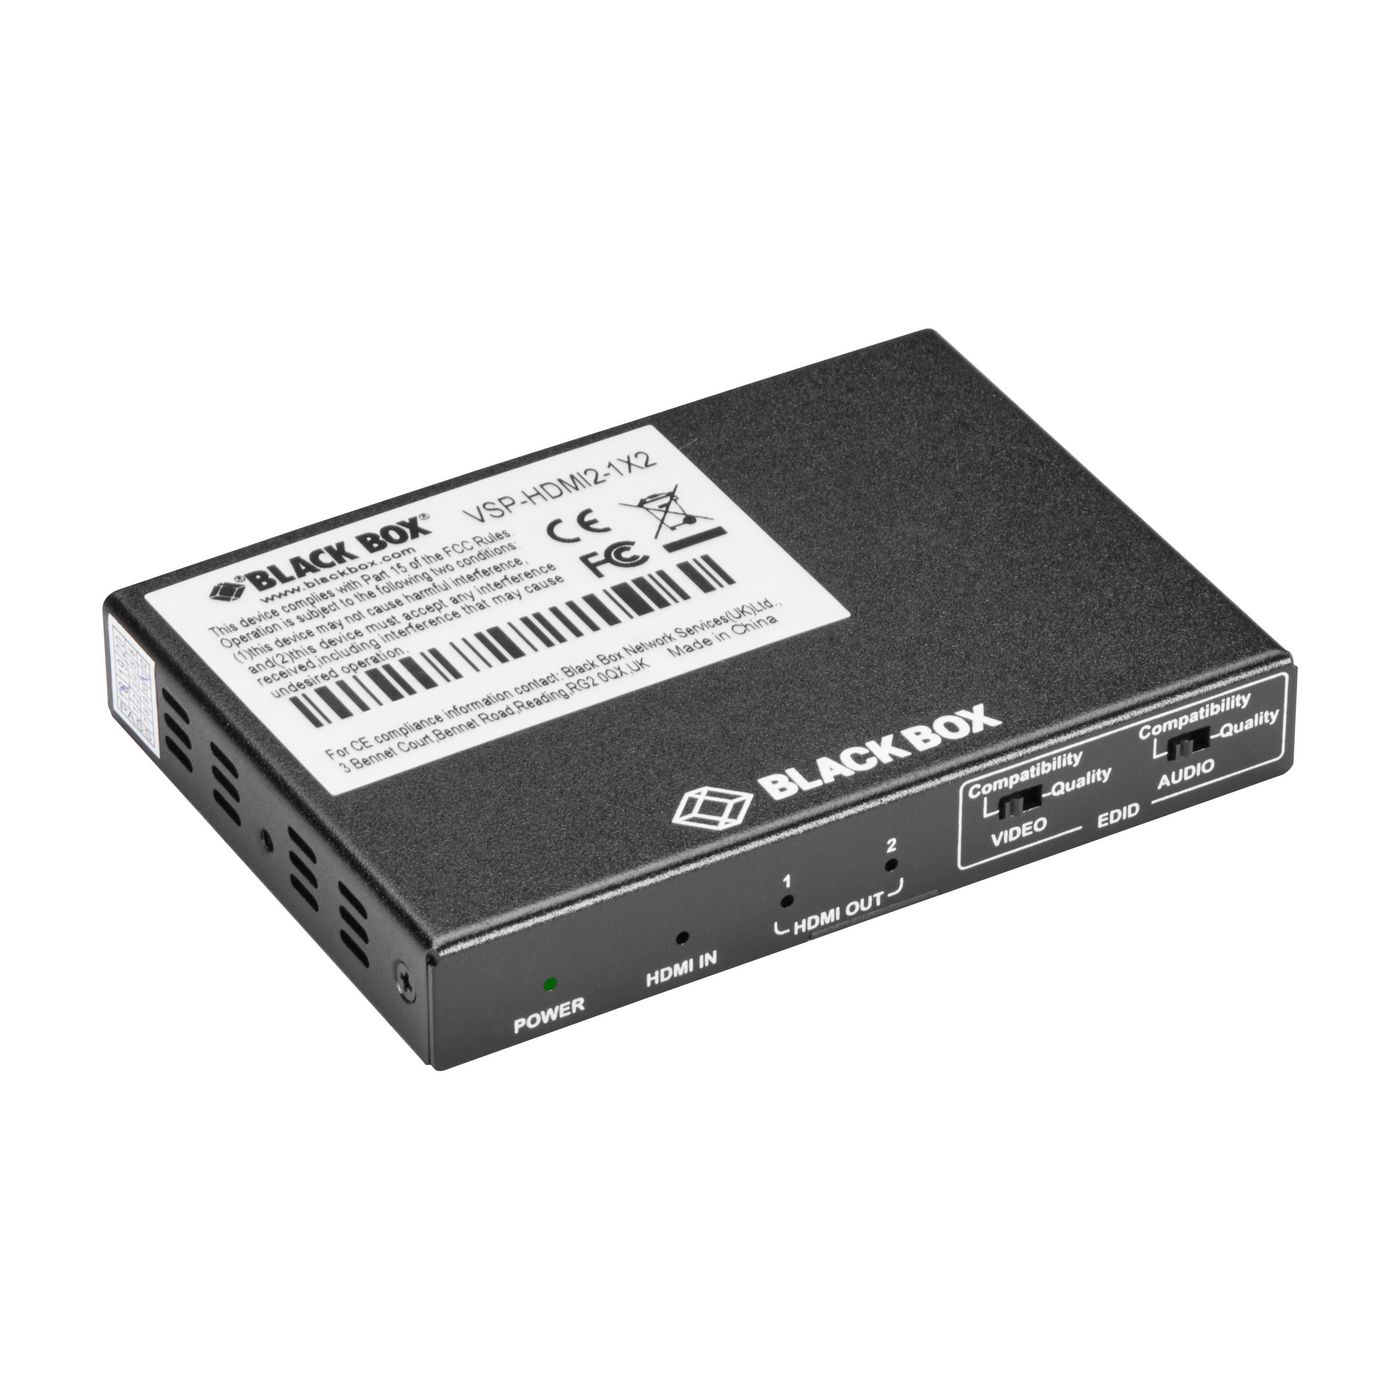 Black-Box VSP-HDMI2-1X2 W126135640 2-PORT SPLITTER 4K 60 HZ 